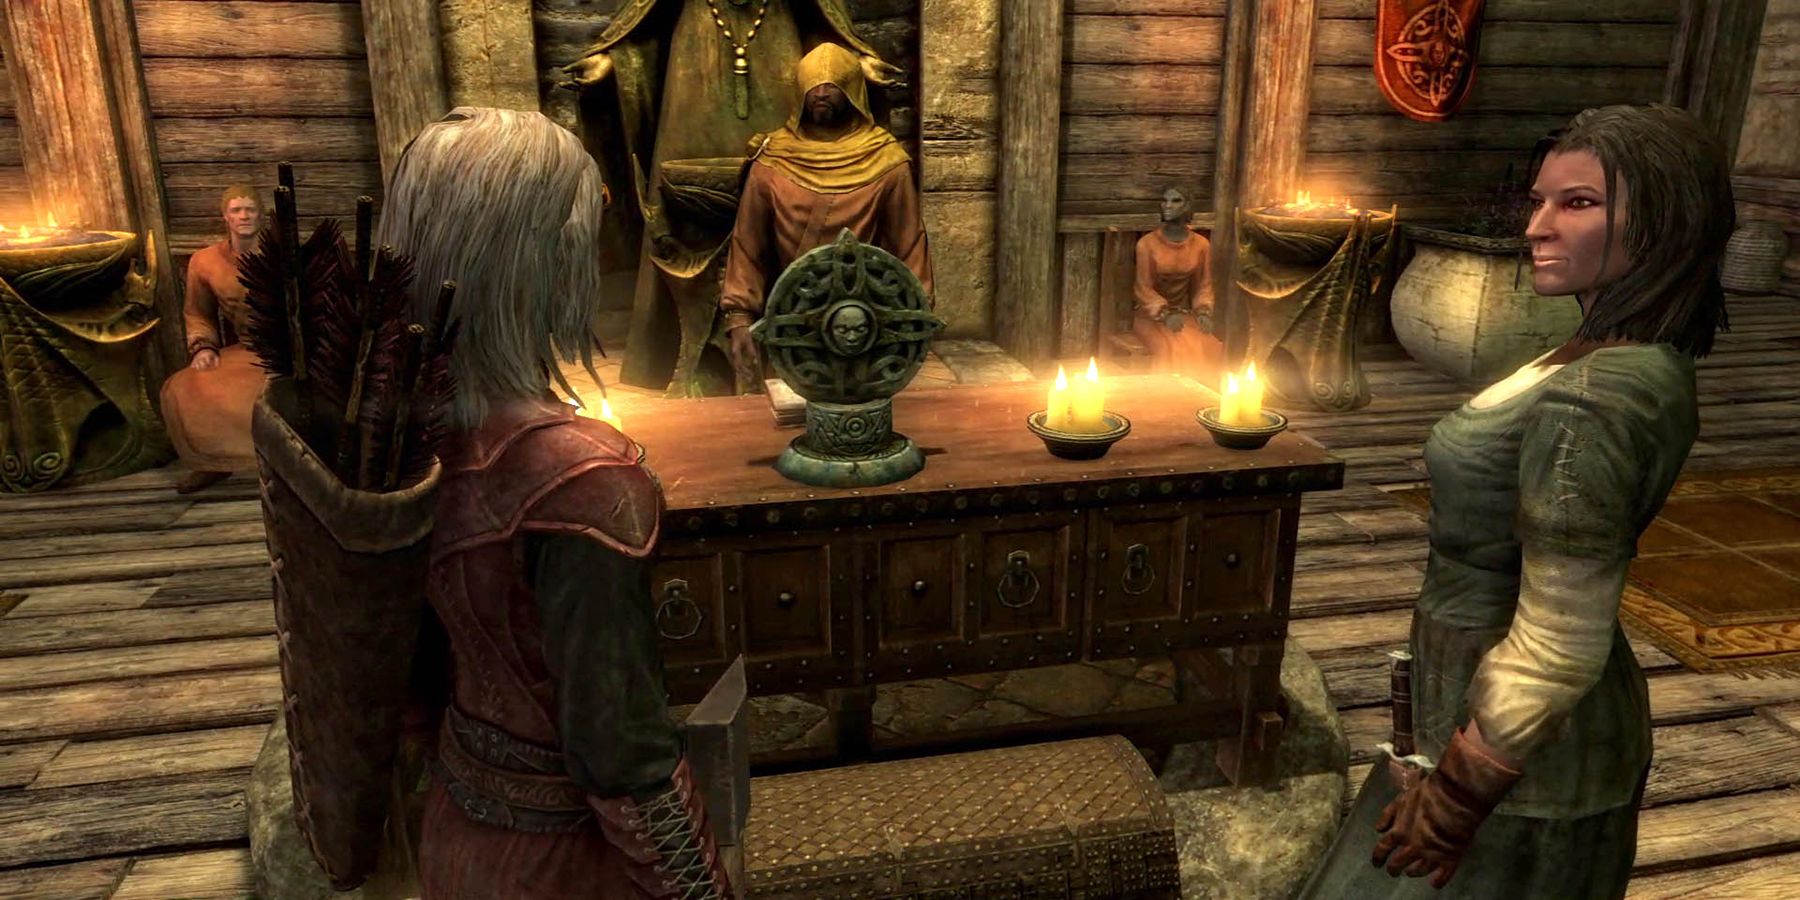 Skyrim Quest ставит игрока в неловкое положение с внутриигровой женой